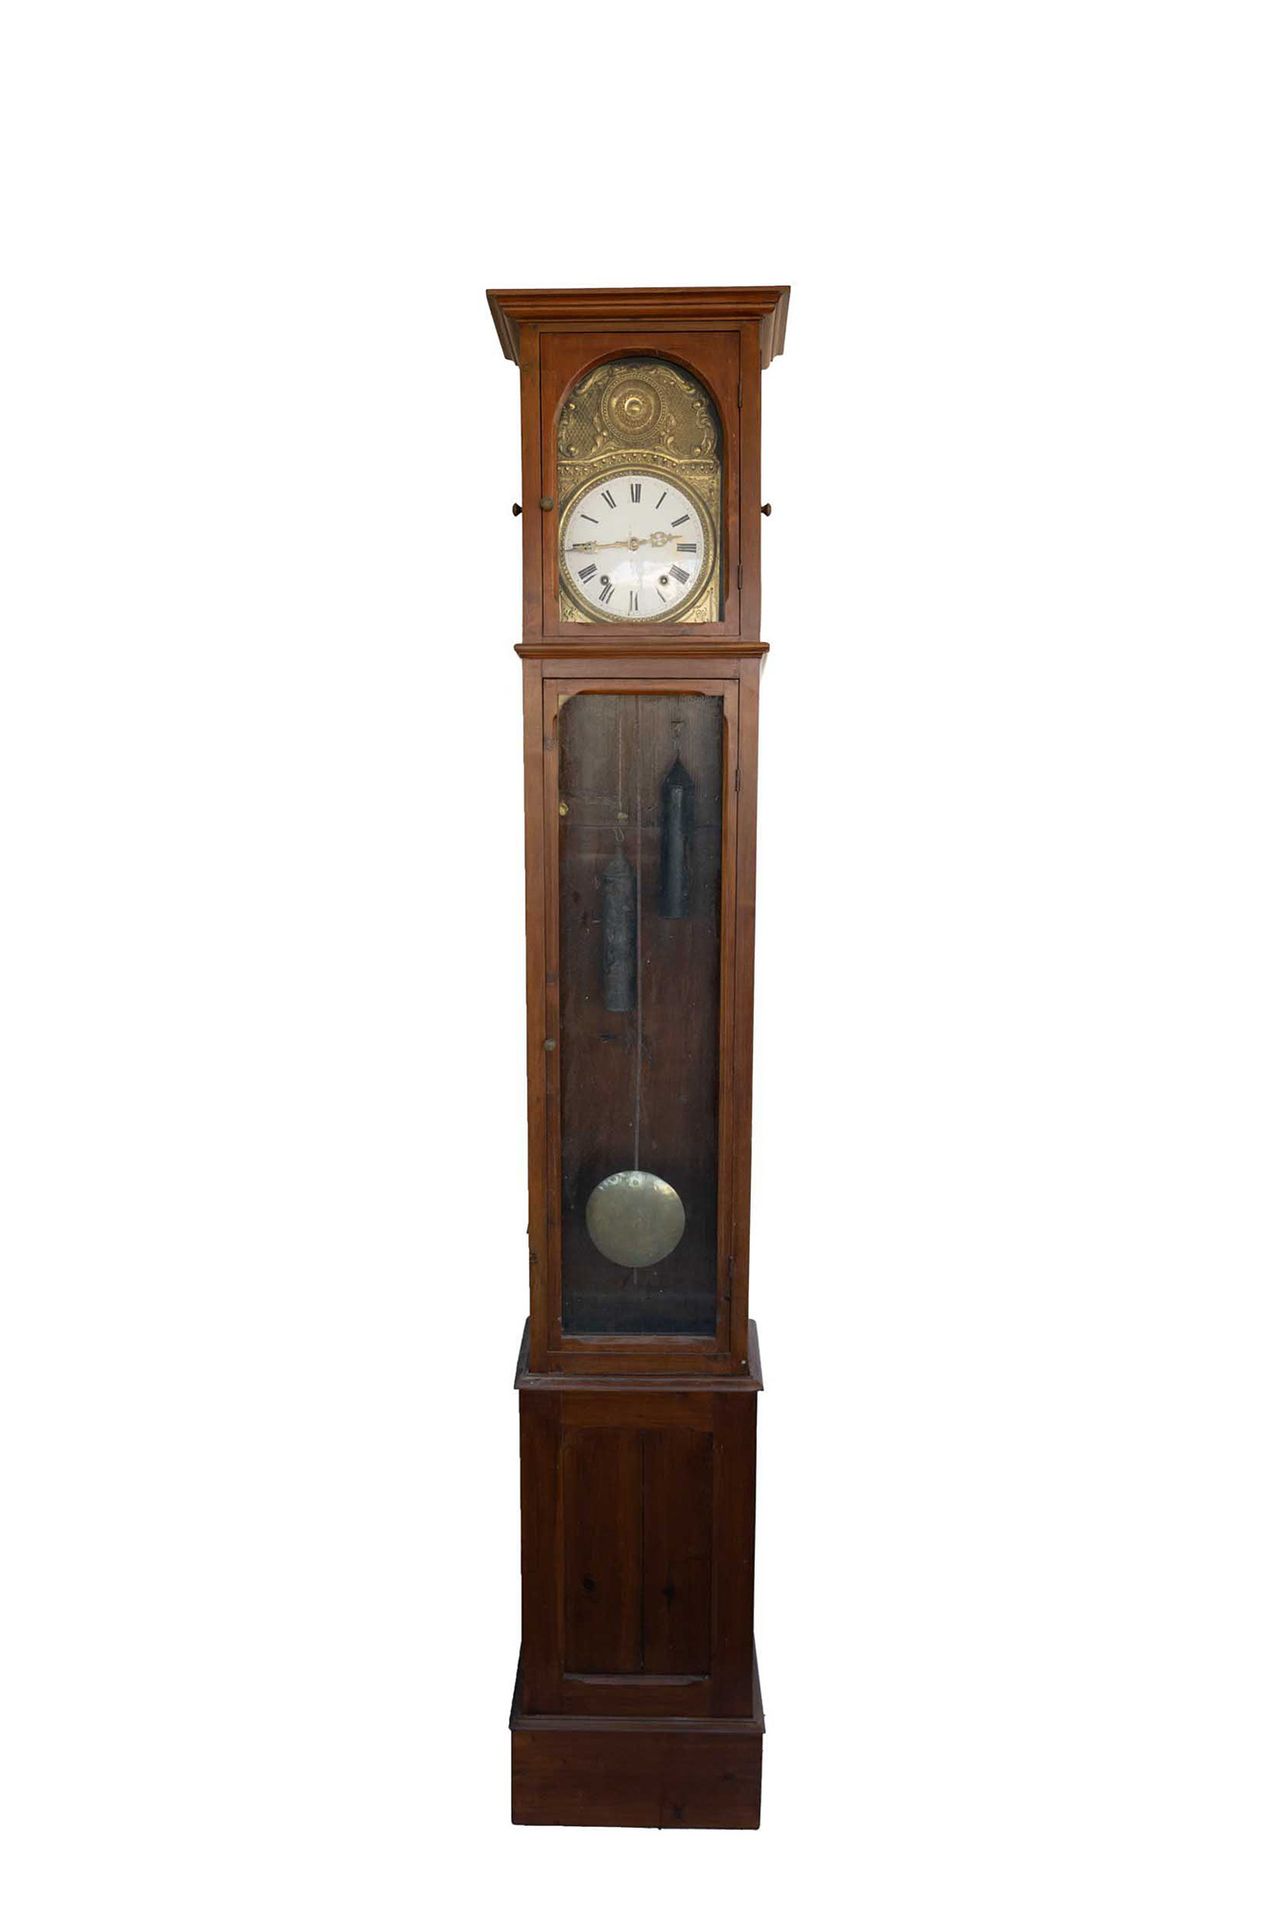 Null 胡桃木柱钟

19世纪中期

xx35厘米